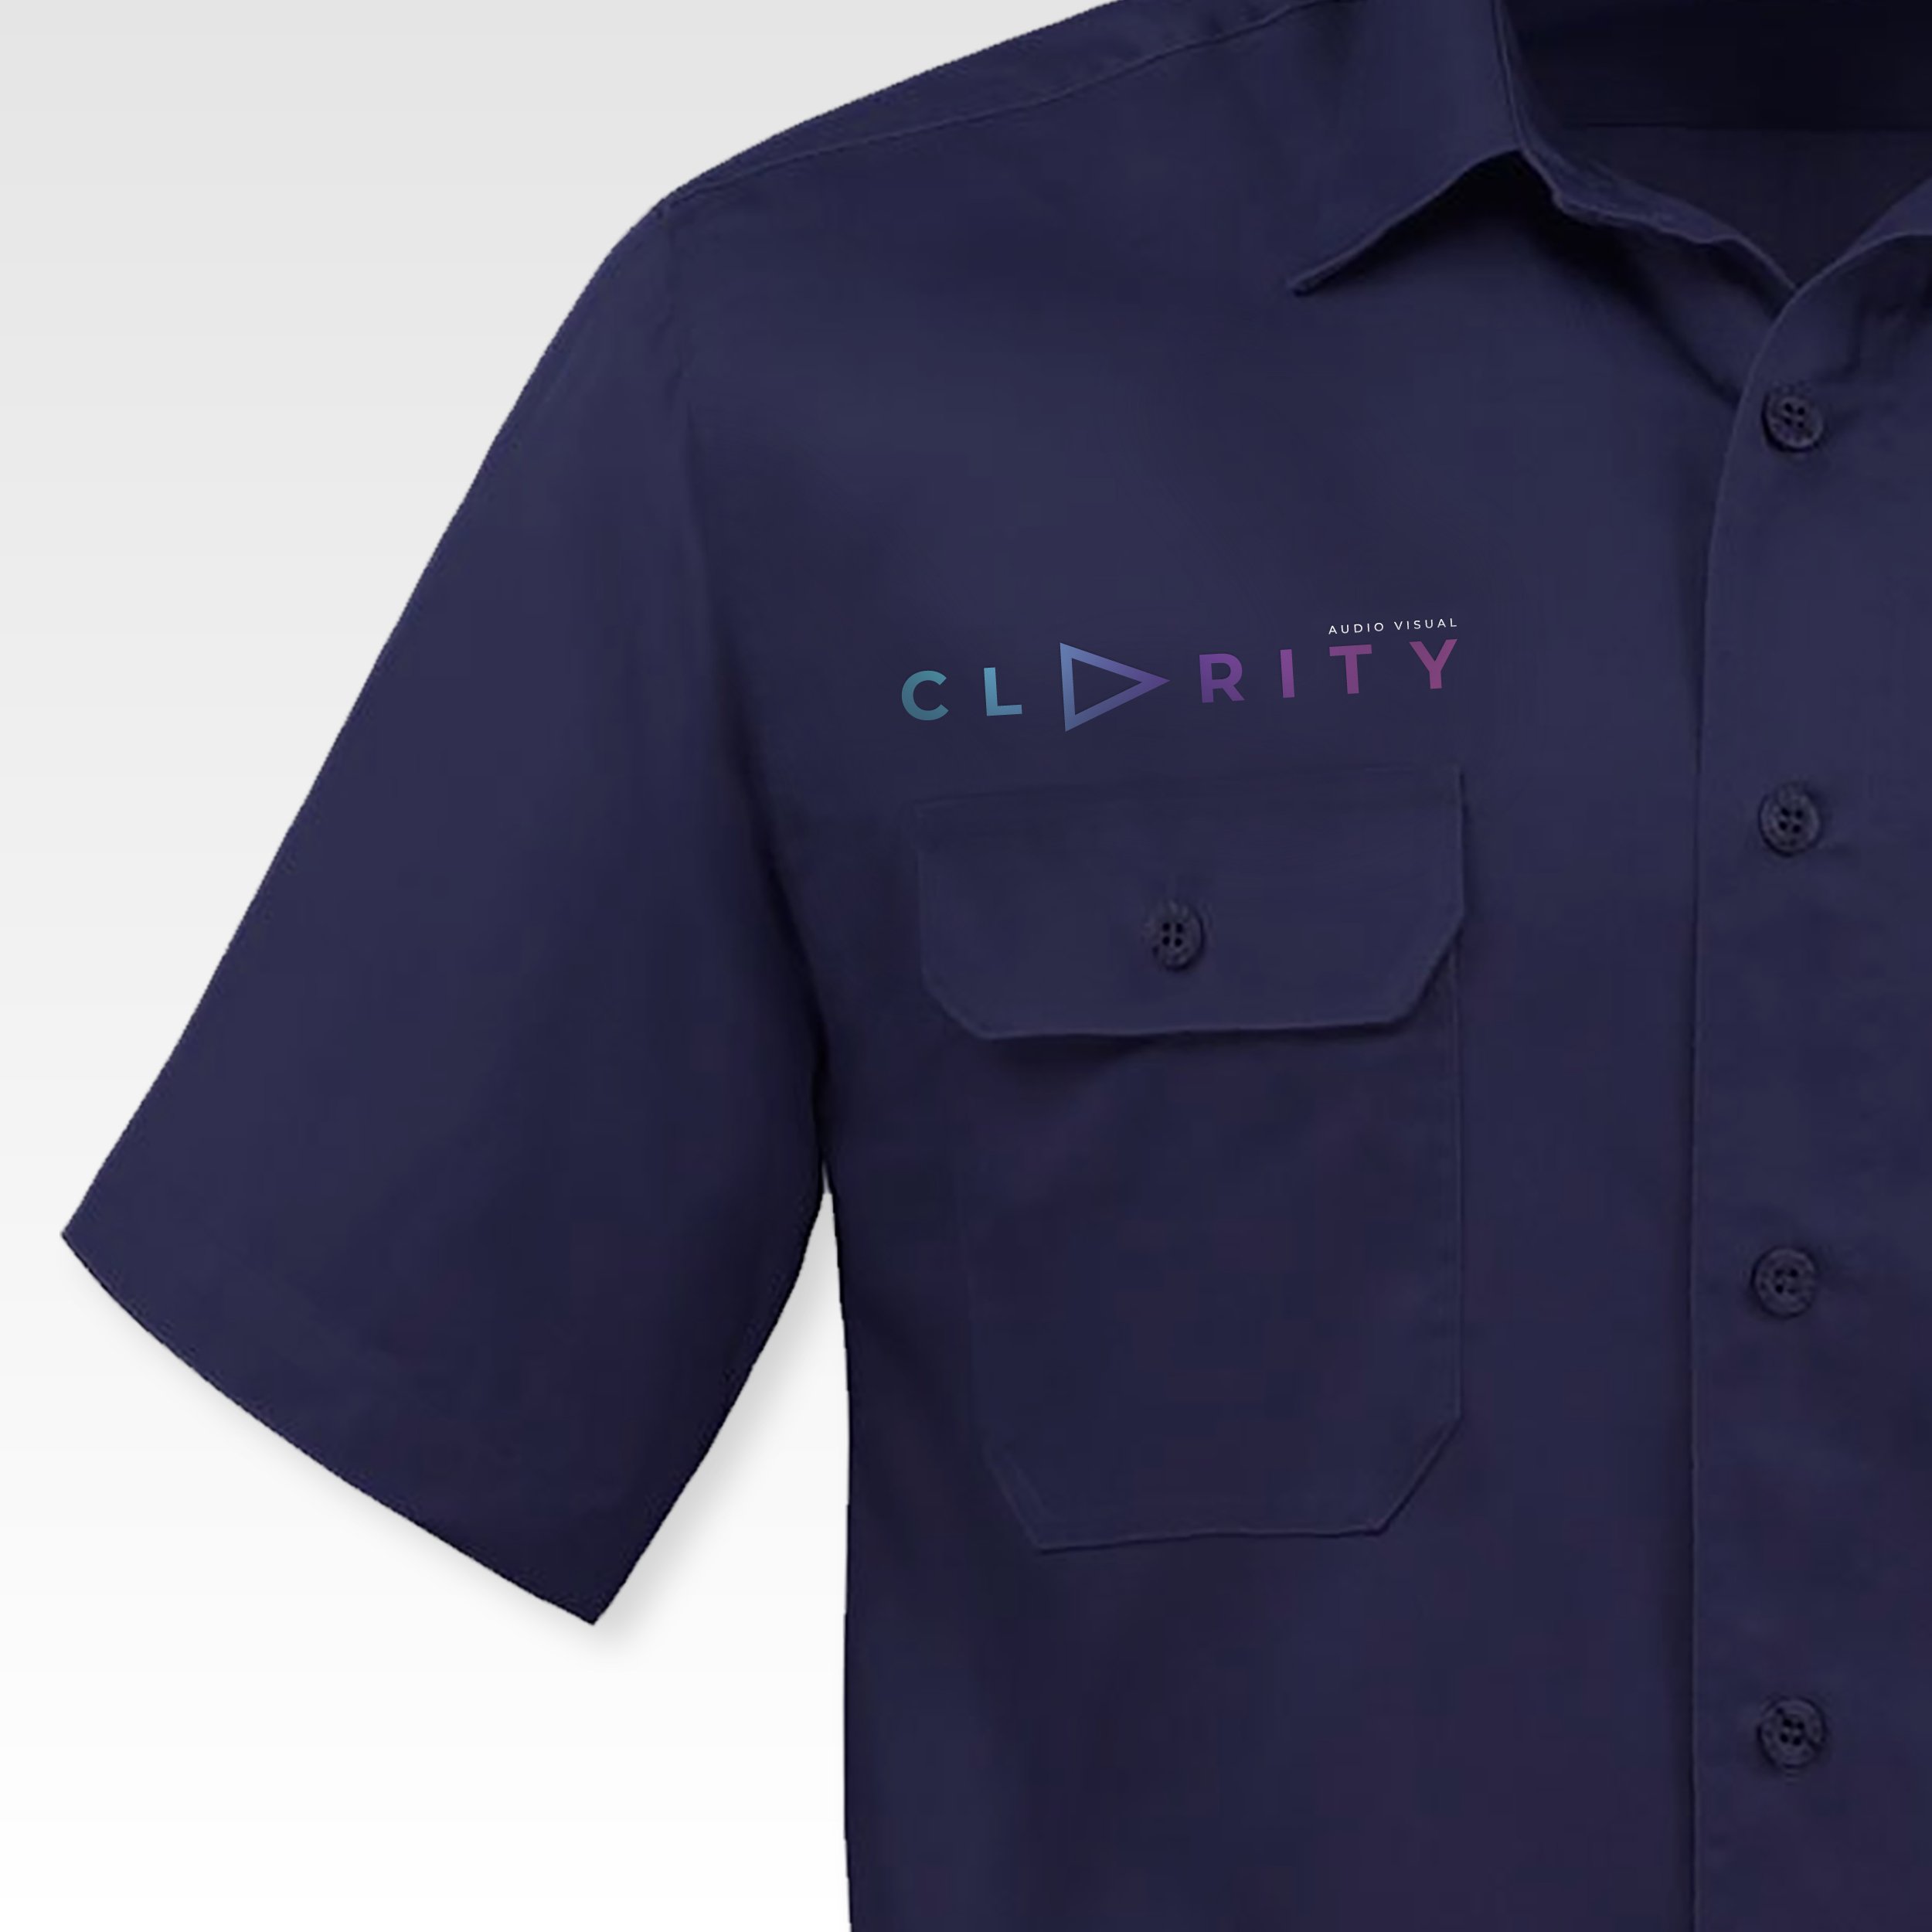 Clarity - Brand Slides5.jpg